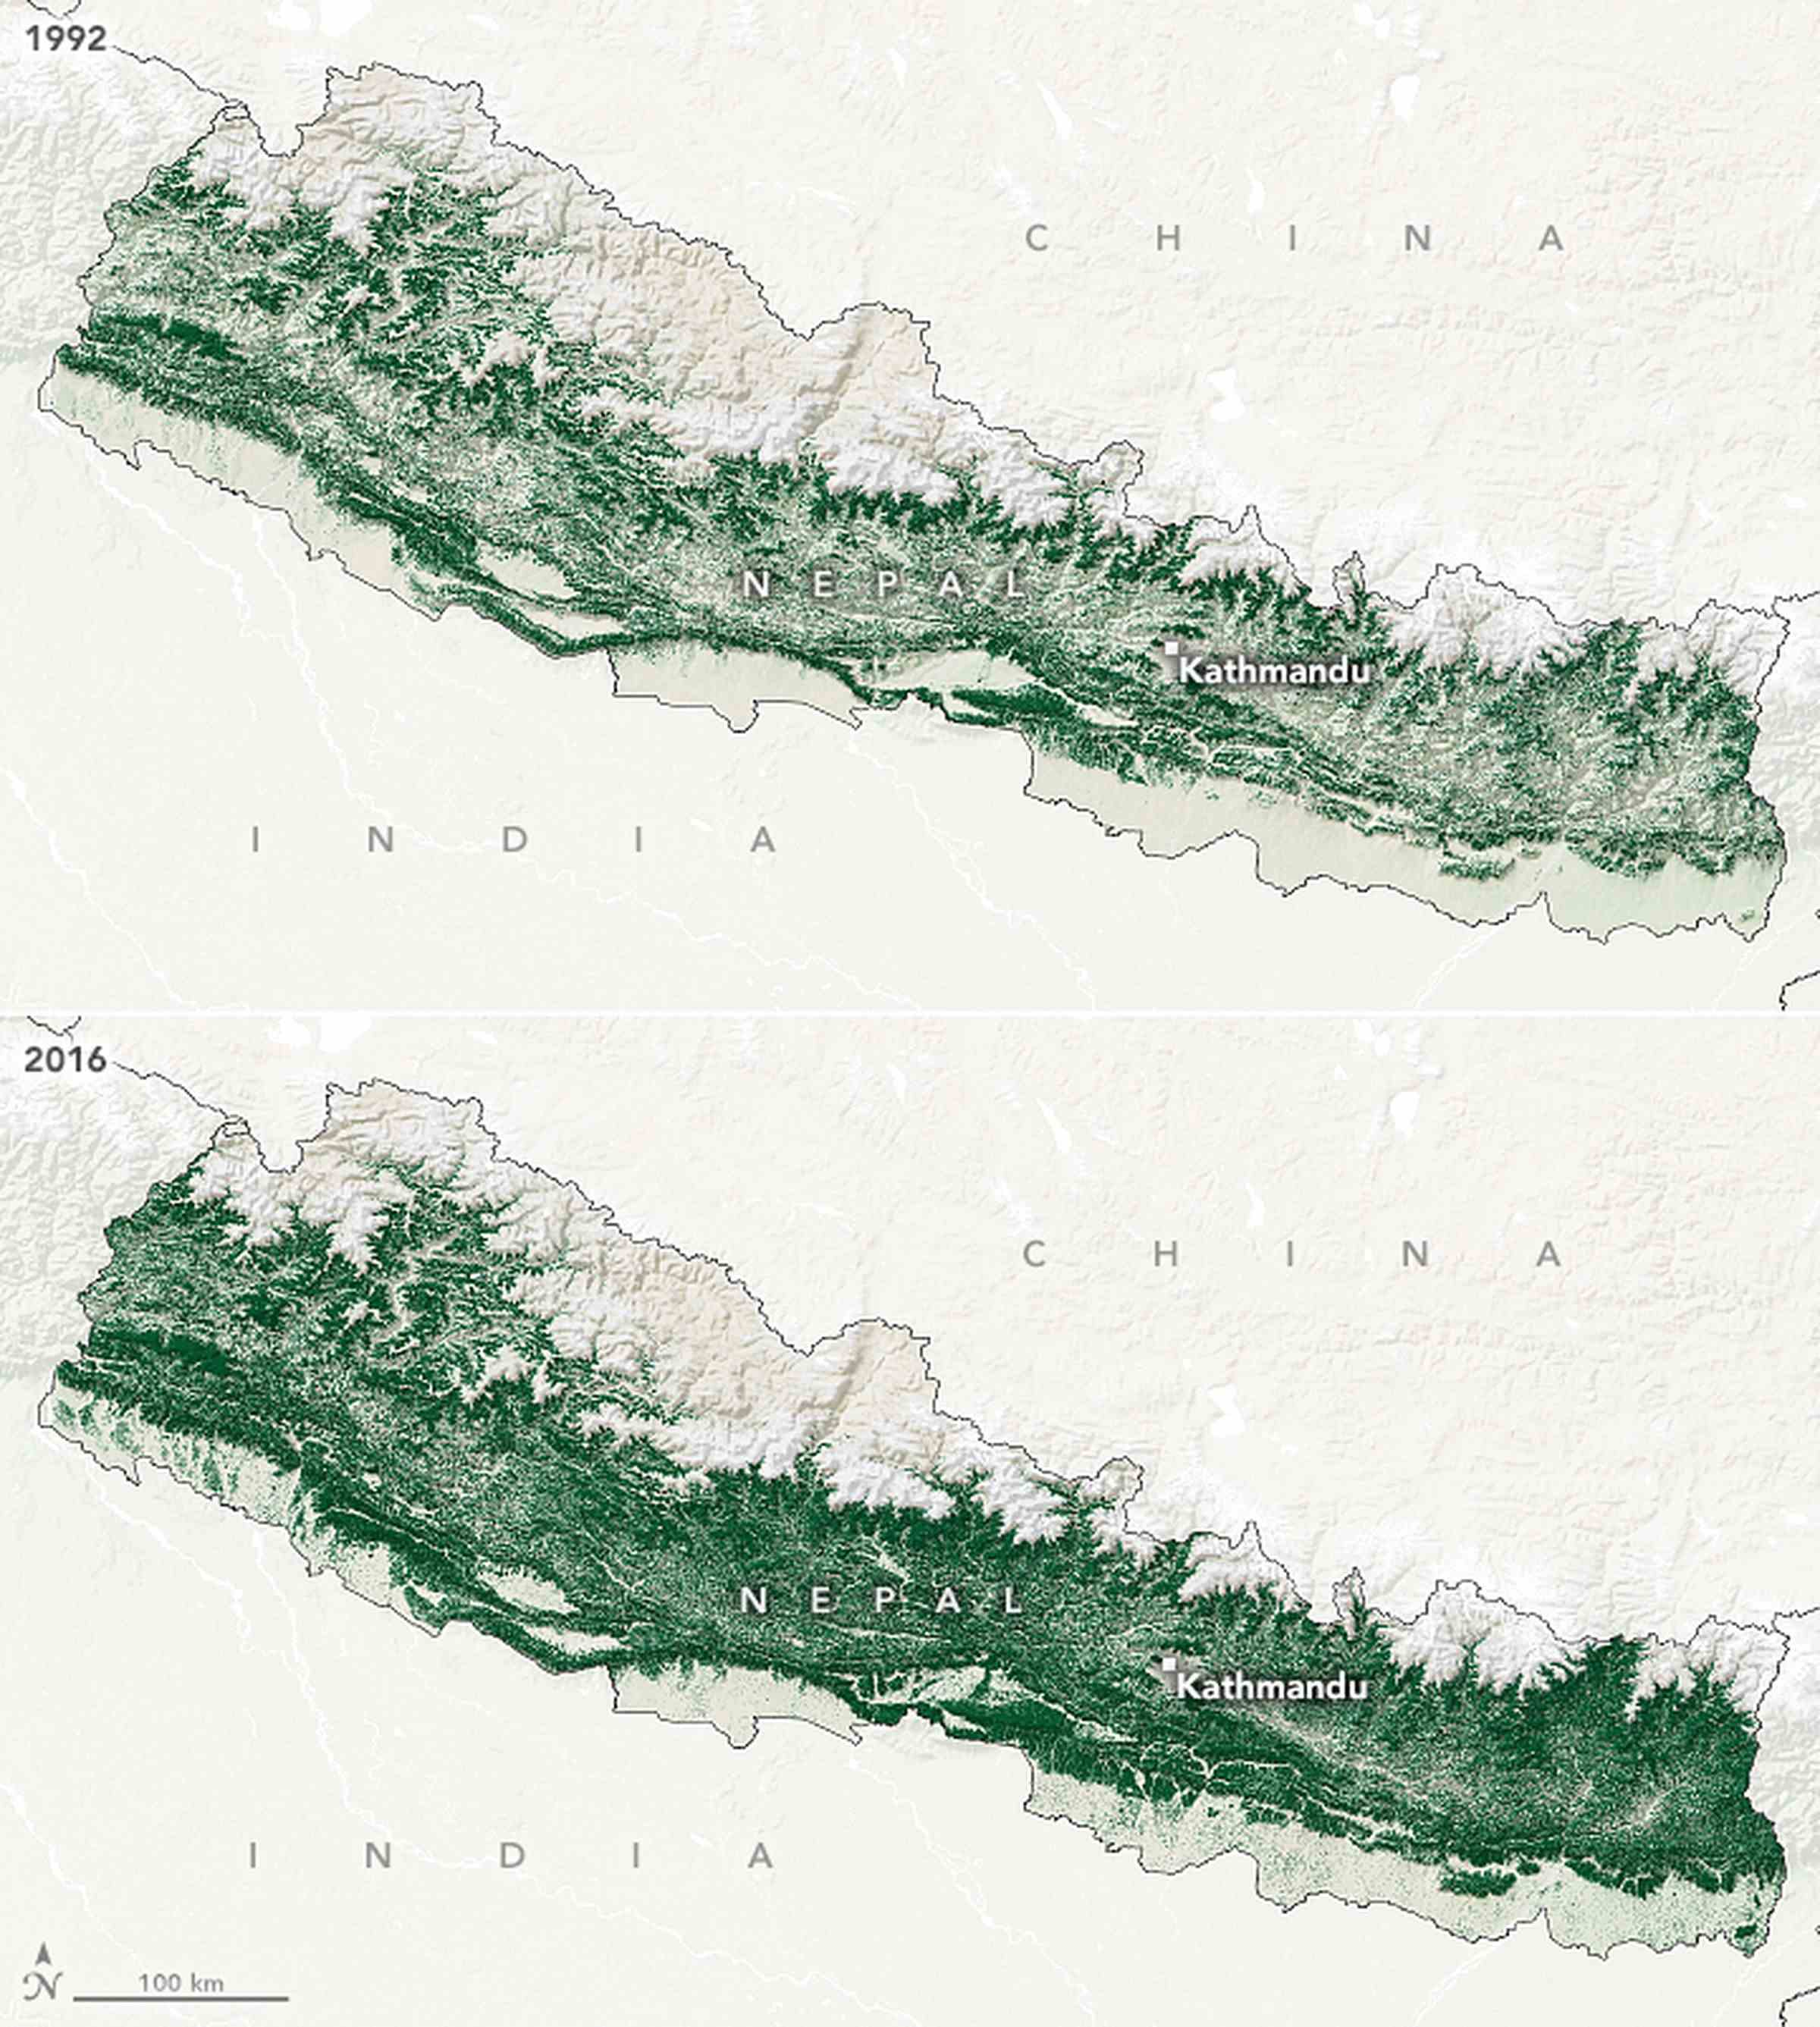 Üstteki bir harita, Nepal'i açık yeşil gölgeli olarak gösteriyor ve 1992'de çok az orman örtüsü olduğunu gösteriyor. Aşağıdaki harita, ülkeyi koyu yeşil renkte gösteriyor ve 2016'da orman örtüsünün arttığını gösteriyor.